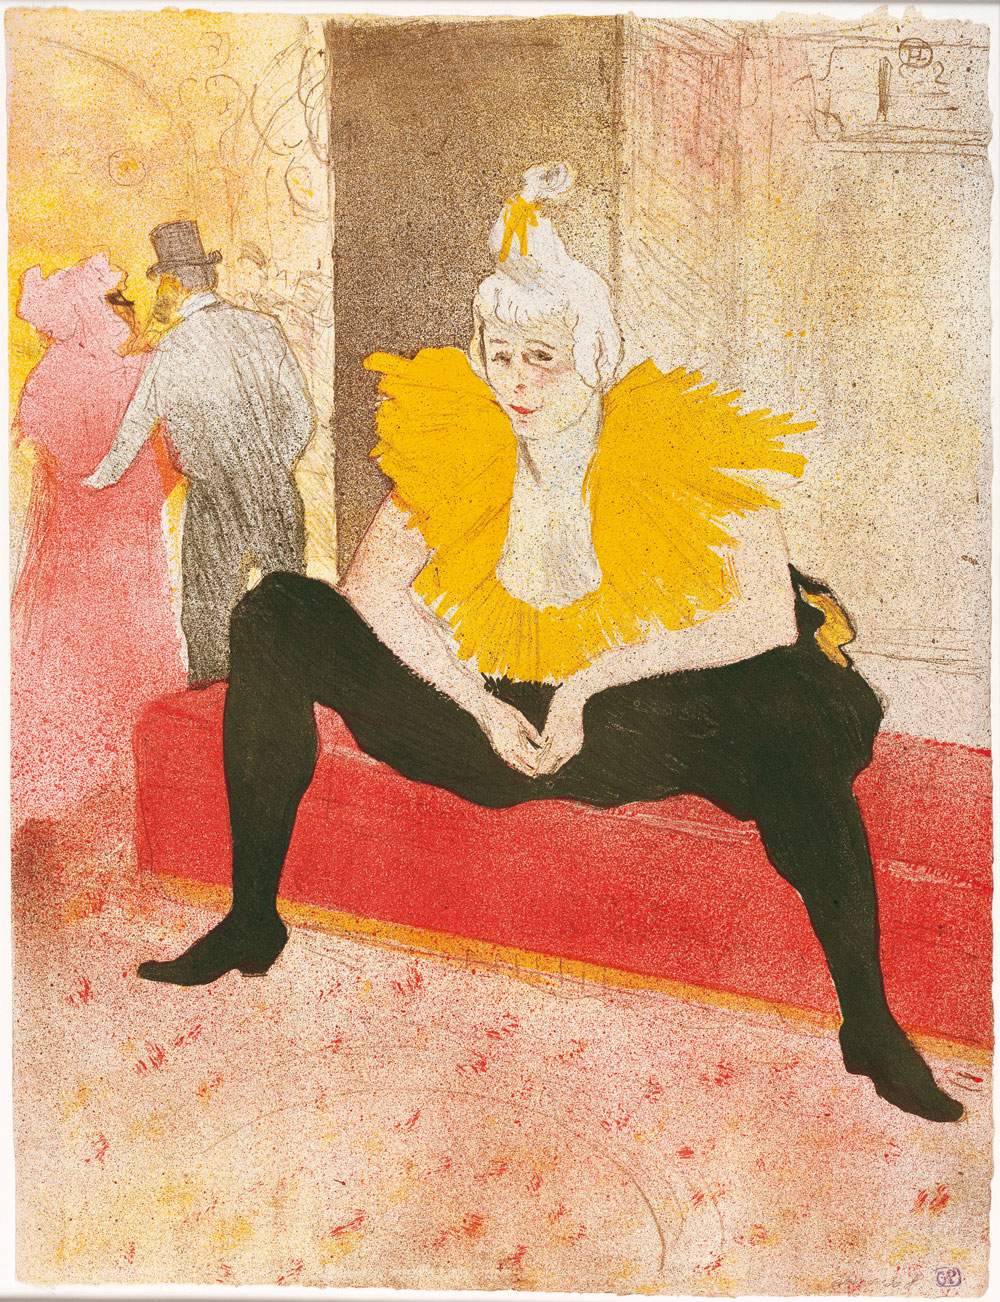 En octobre, l'exposition Toulouse-Lautrec, le monde éphémère sera présentée au Palazzo Reale de Milan.